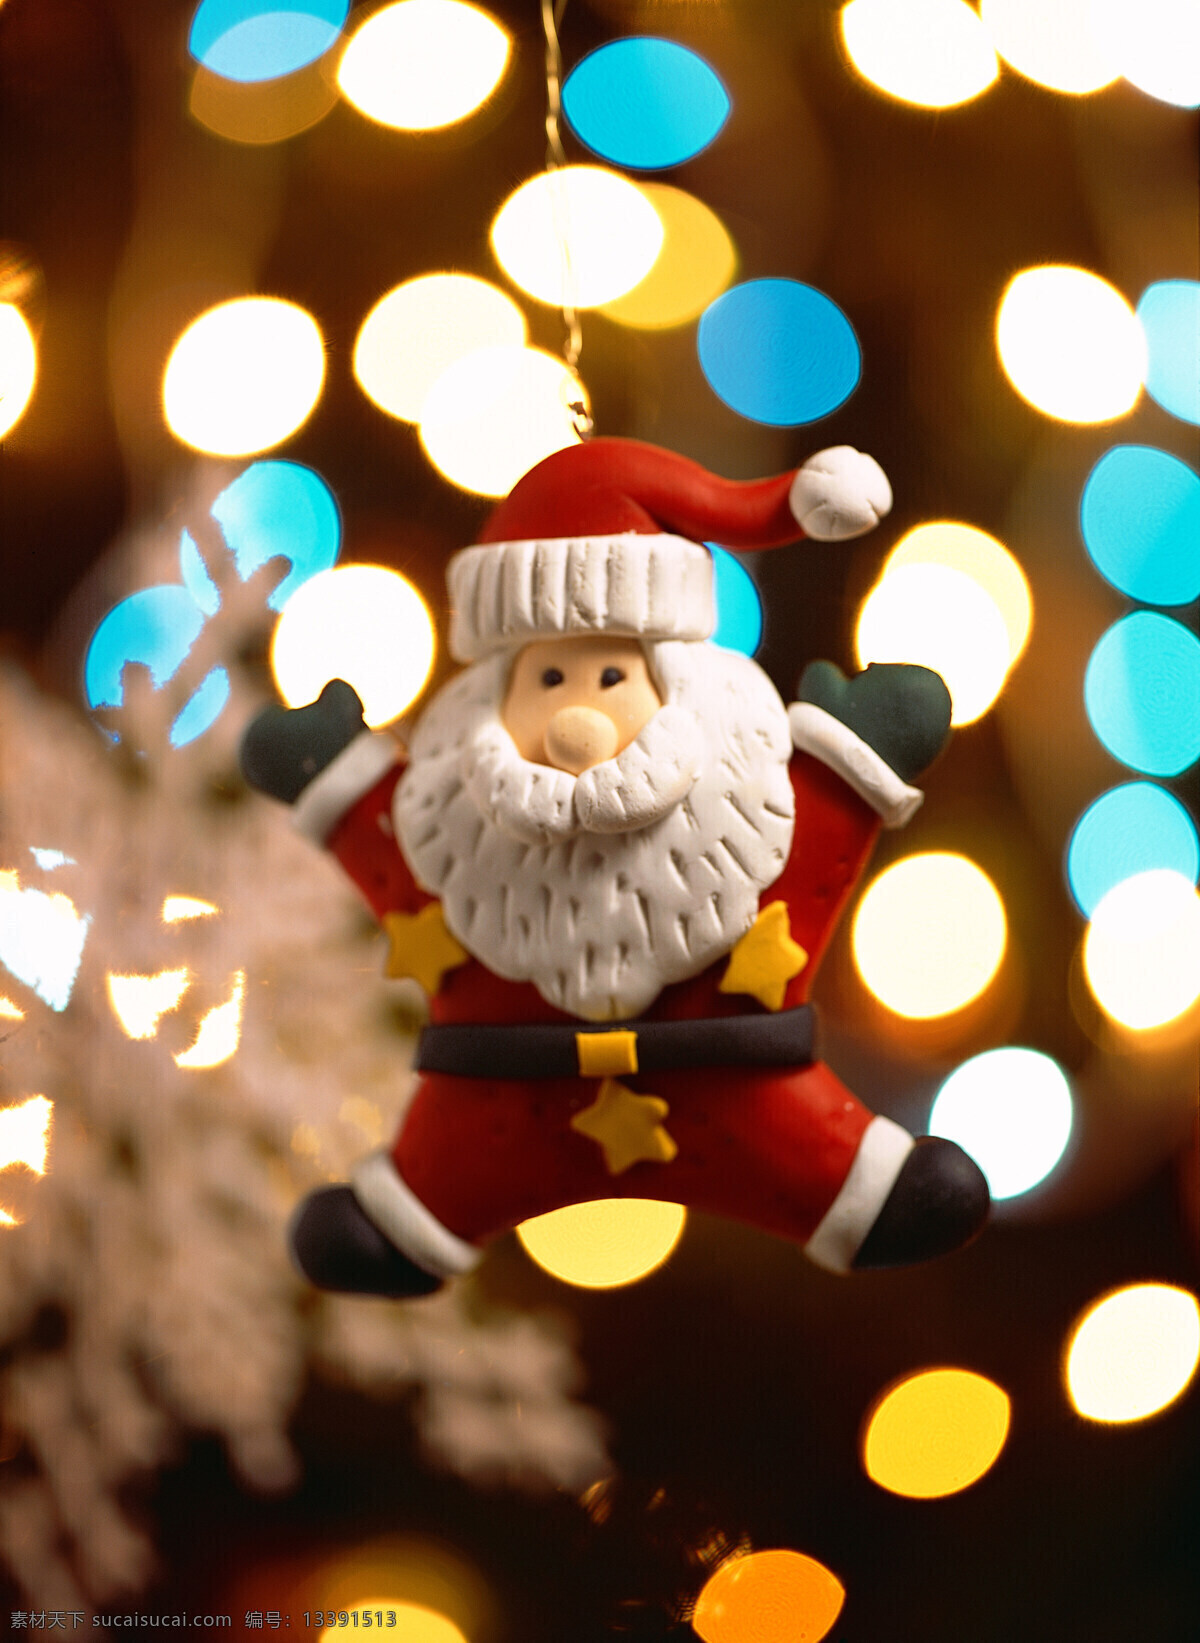 圣诞 礼物 风铃 海星 礼品盒 铃铛 圣诞礼物 圣诞树 雪人 烛光 节日素材 其他节日